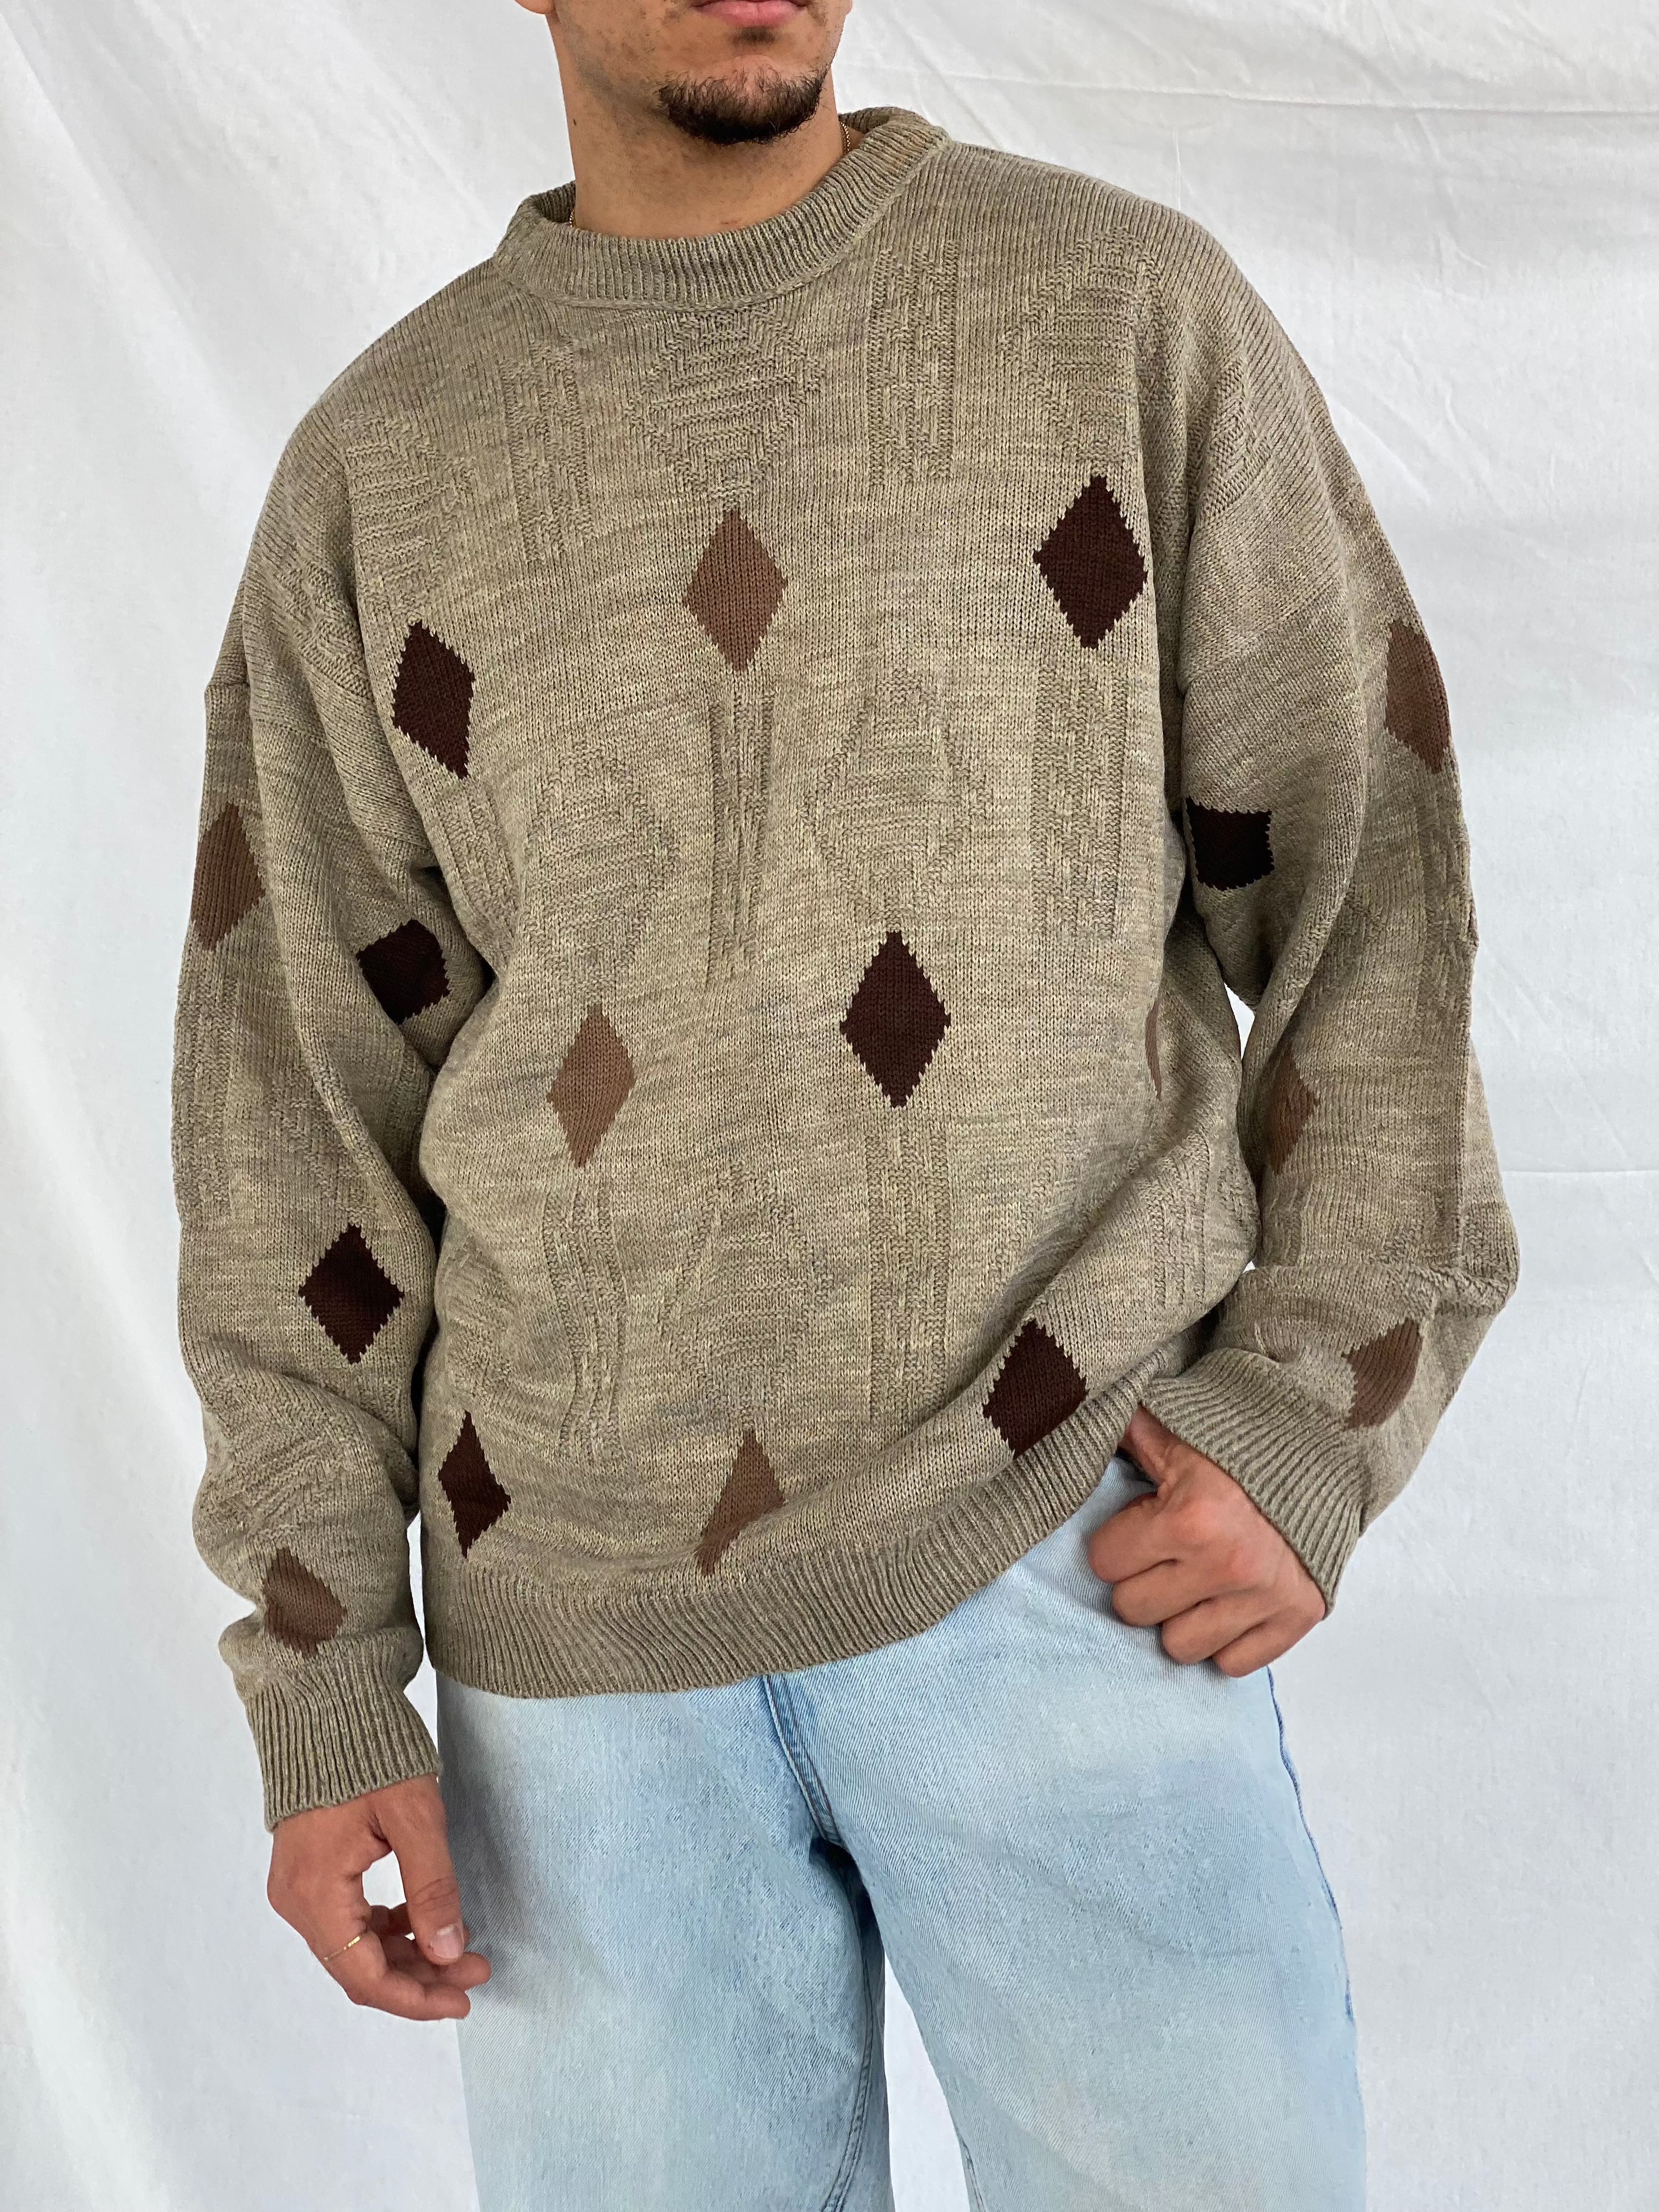 Vintage knitted Sweater - Balagan Vintage Sweater 90s, knit, knitted, knitted sweater, men, streetwear, vintage, vintage sweater, winter